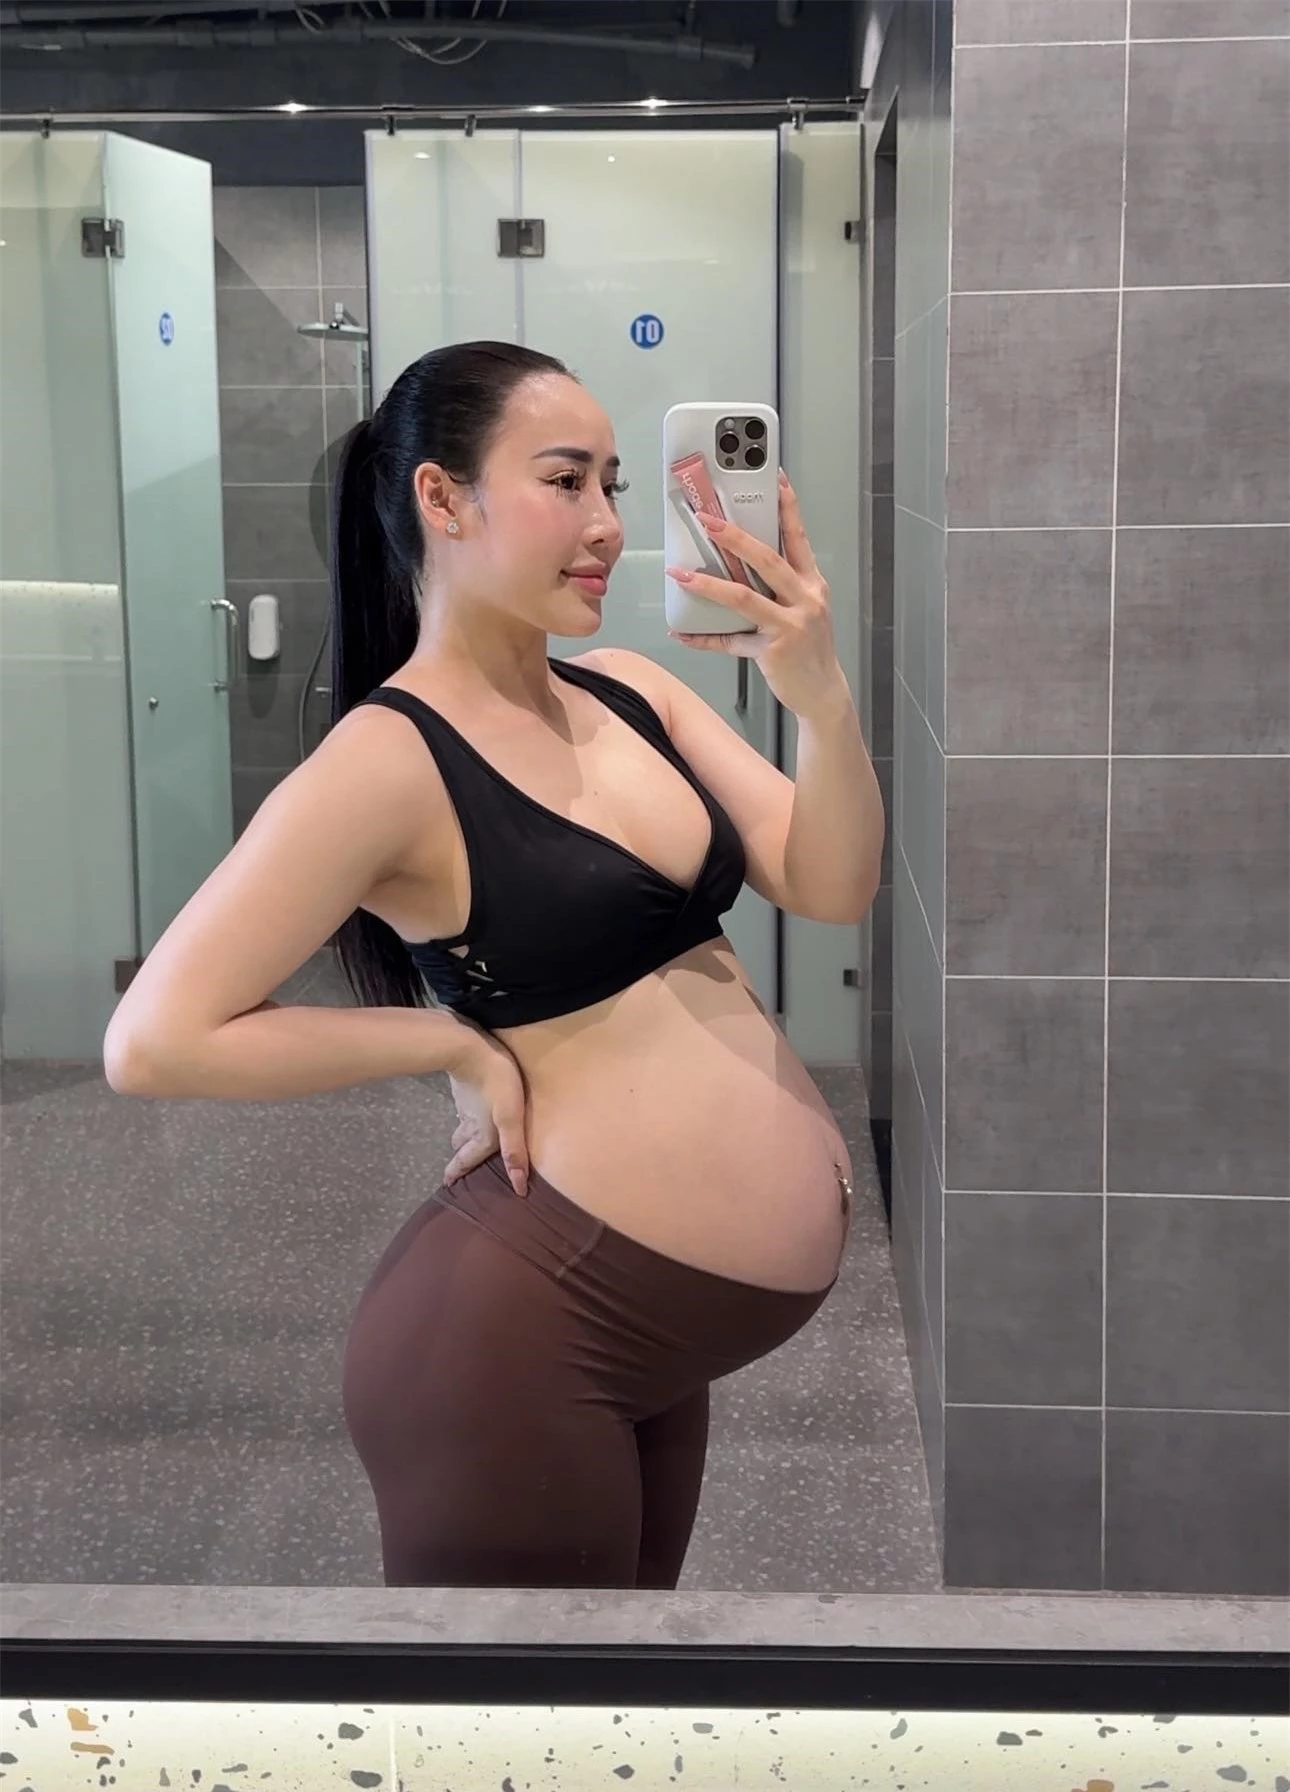 Khi hot girl đình đám làng fitness mang thai: Bầu 39 tuần vẫn nâng tạ 160kg nhìn "toát mồ hôi hột" - 1